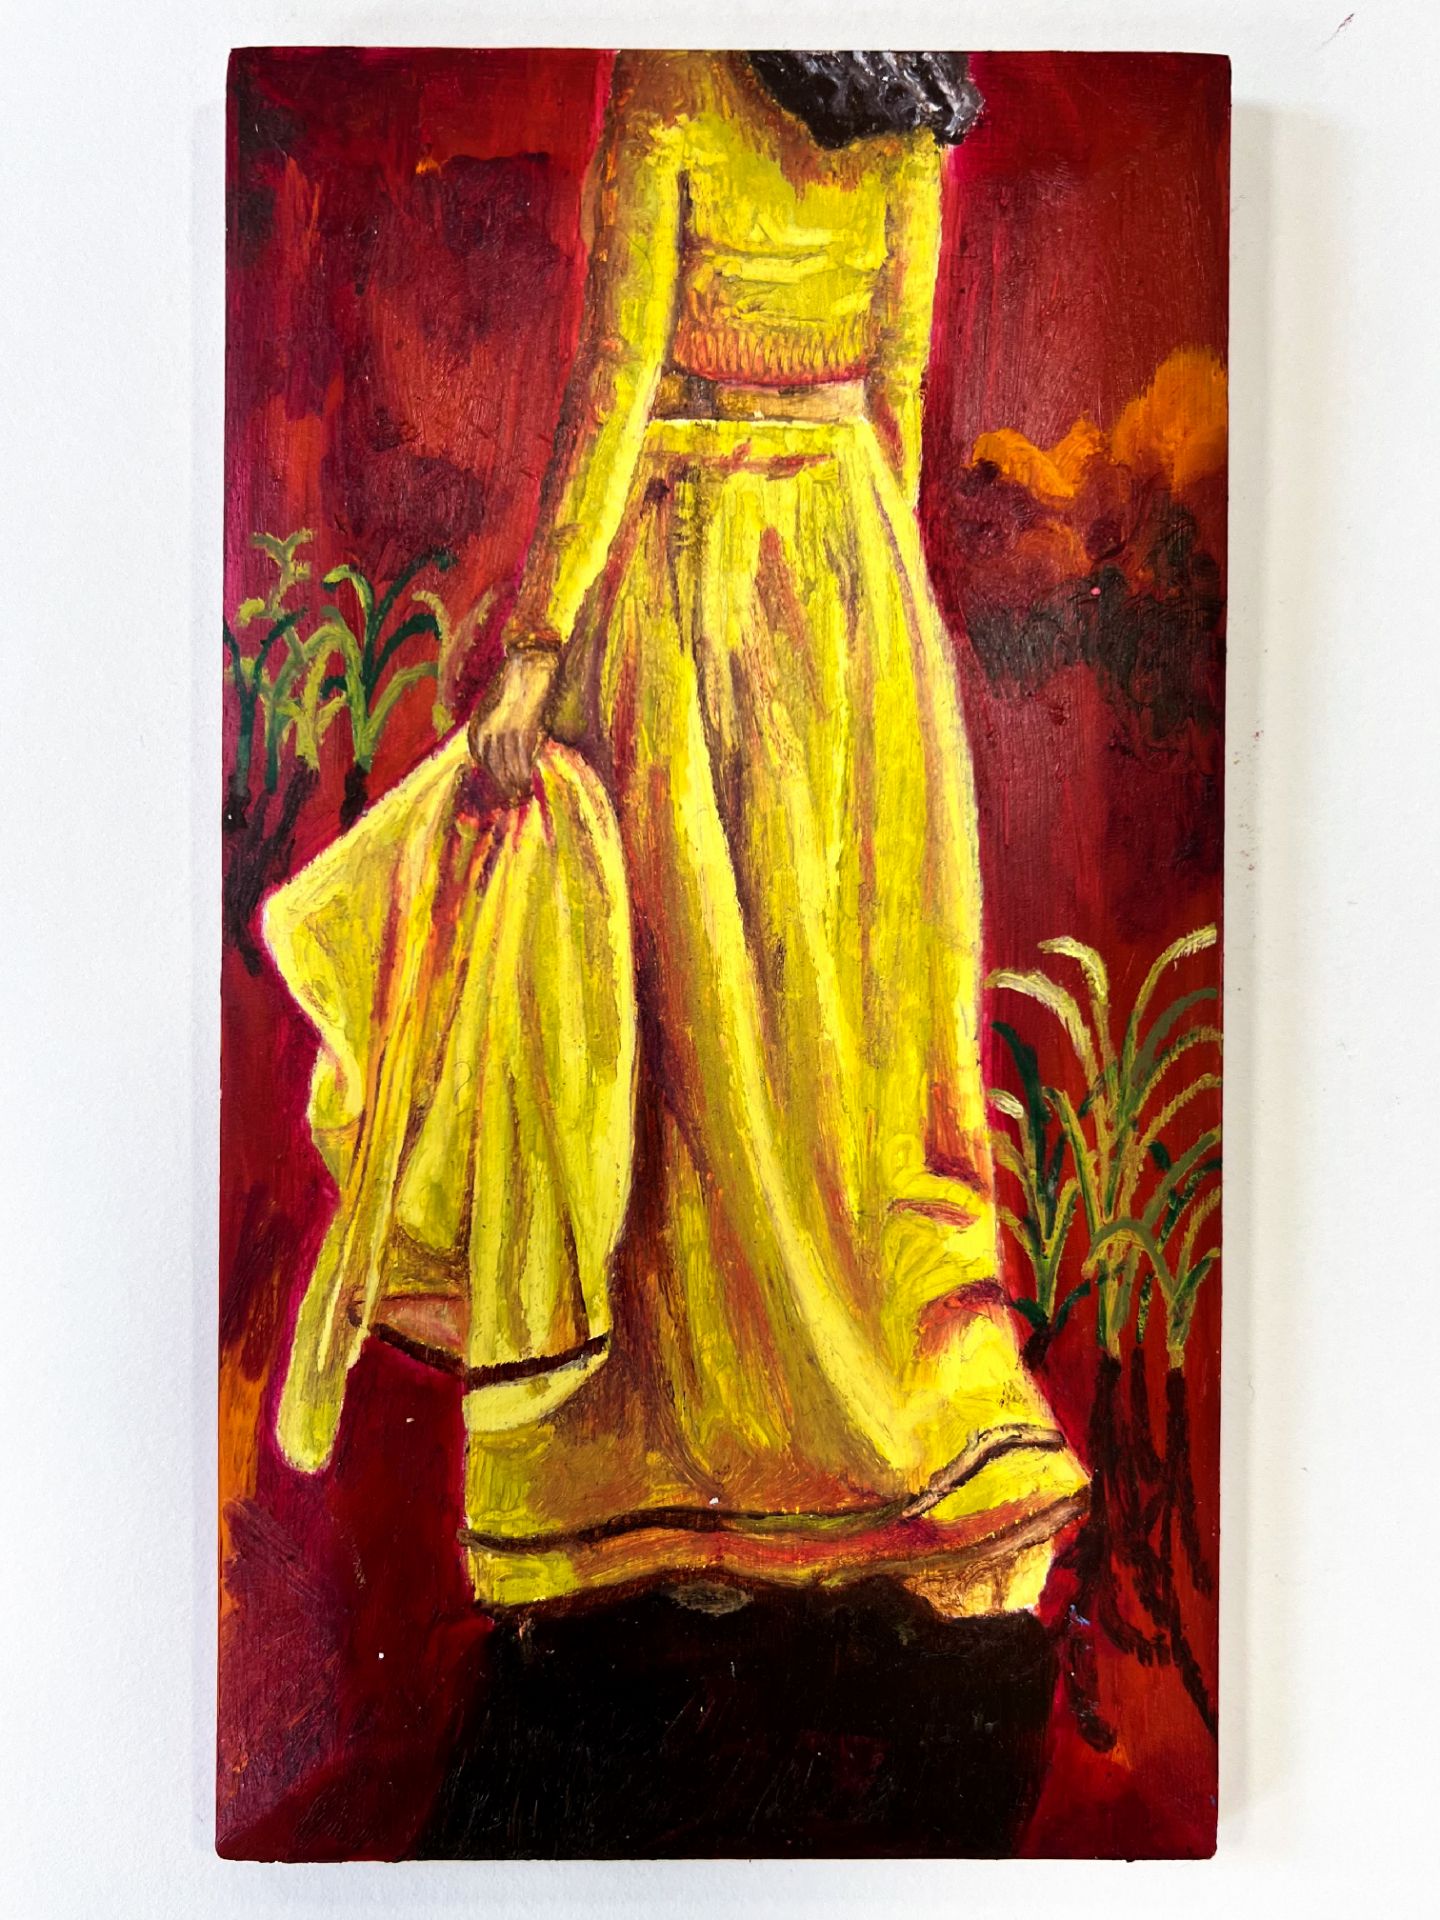 Sophia Bharmal, "Panel 3", oil paint & oil stick on wood, 22.3 x 12.2cm, c. 2023. This speaks about